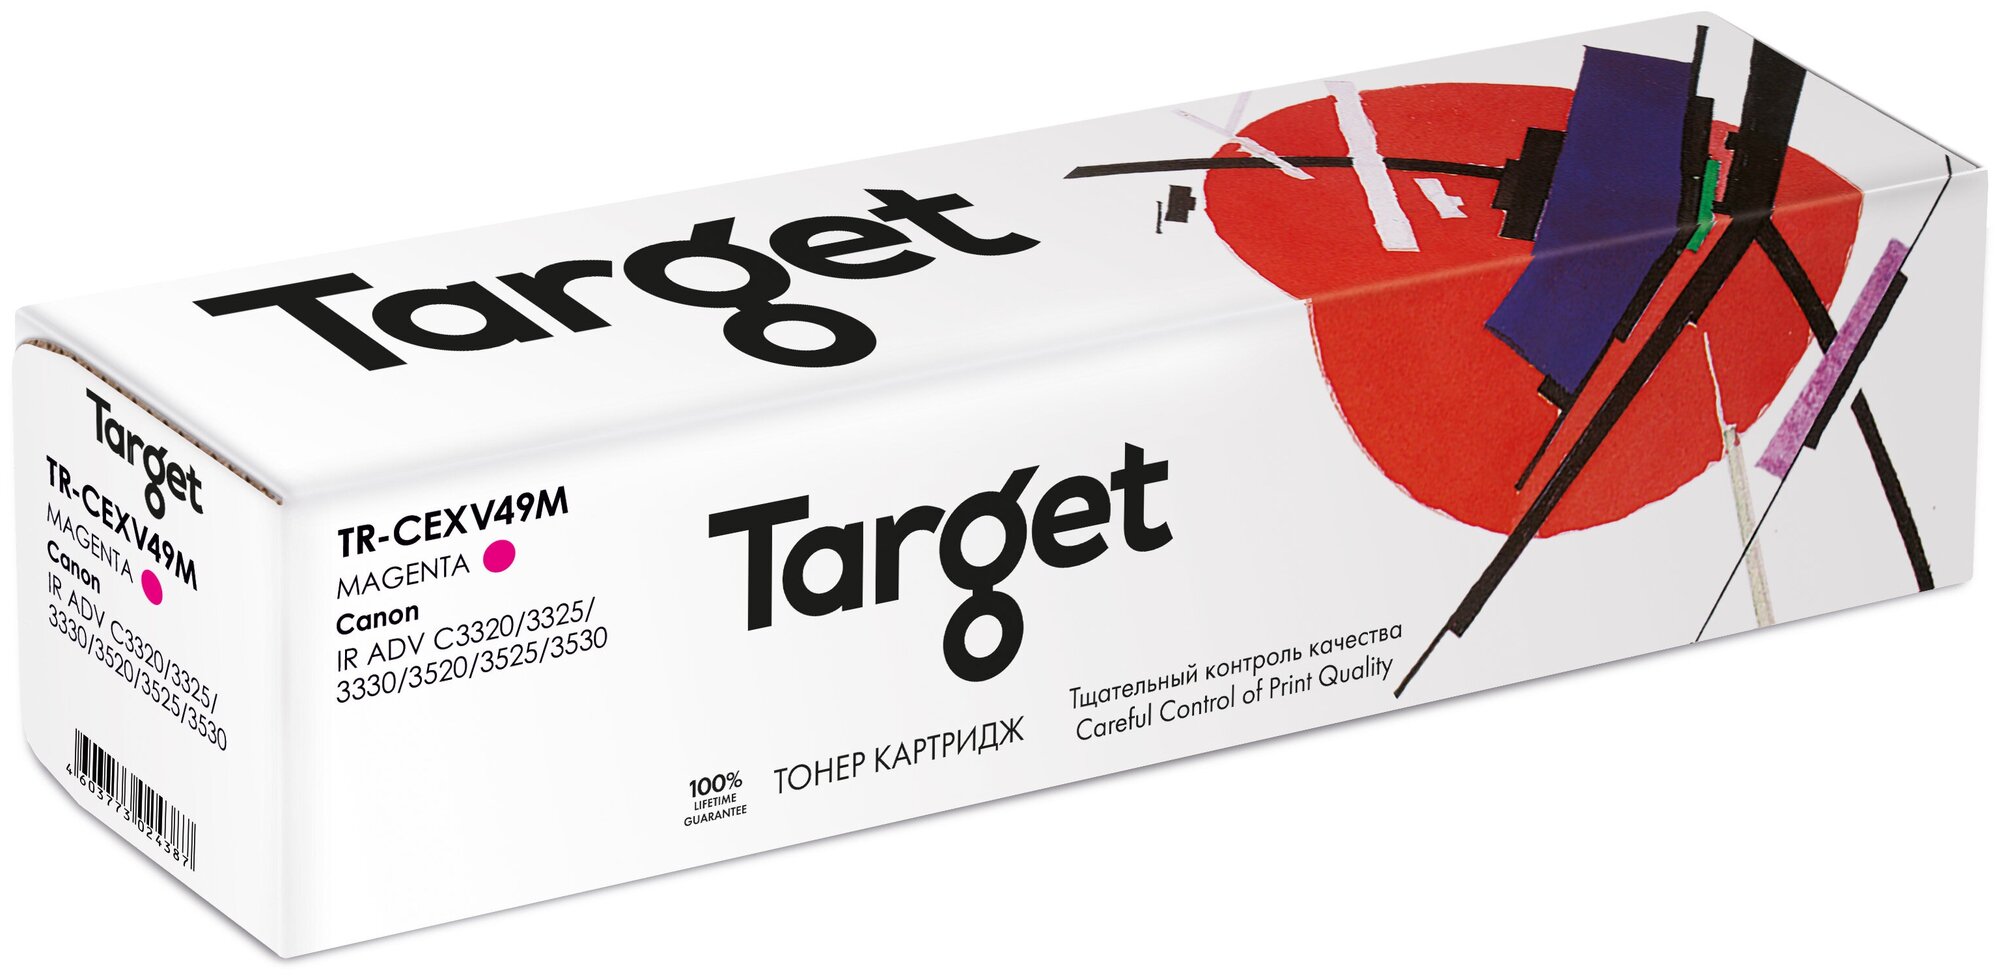 Тонер-картридж Target CEXV49M, пурпурный, для лазерного принтера, совместимый